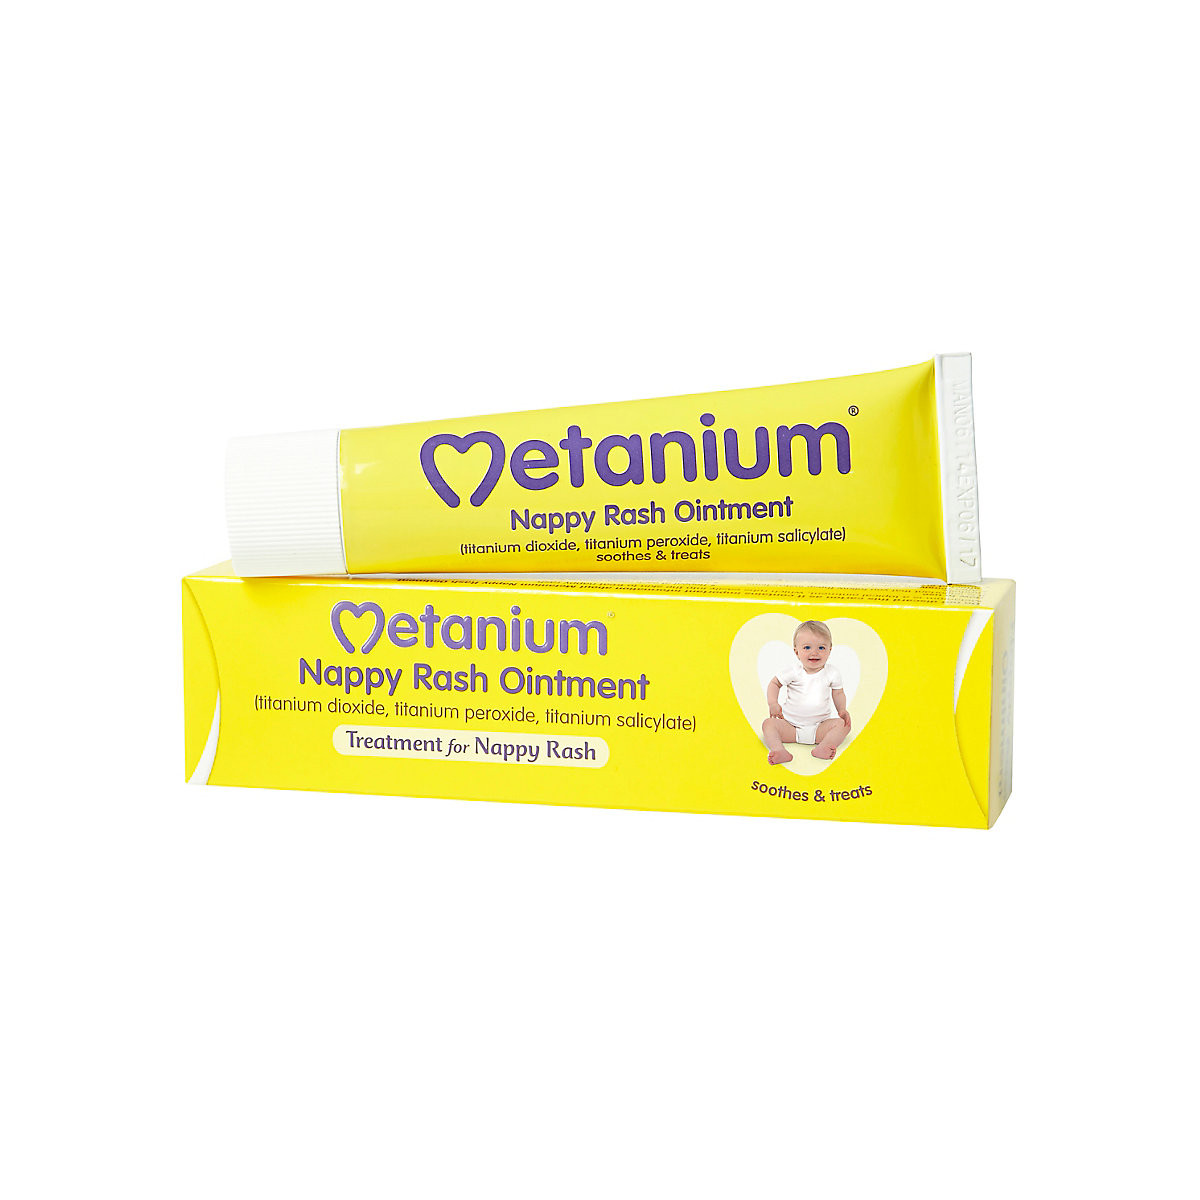 Metanium nappy cream